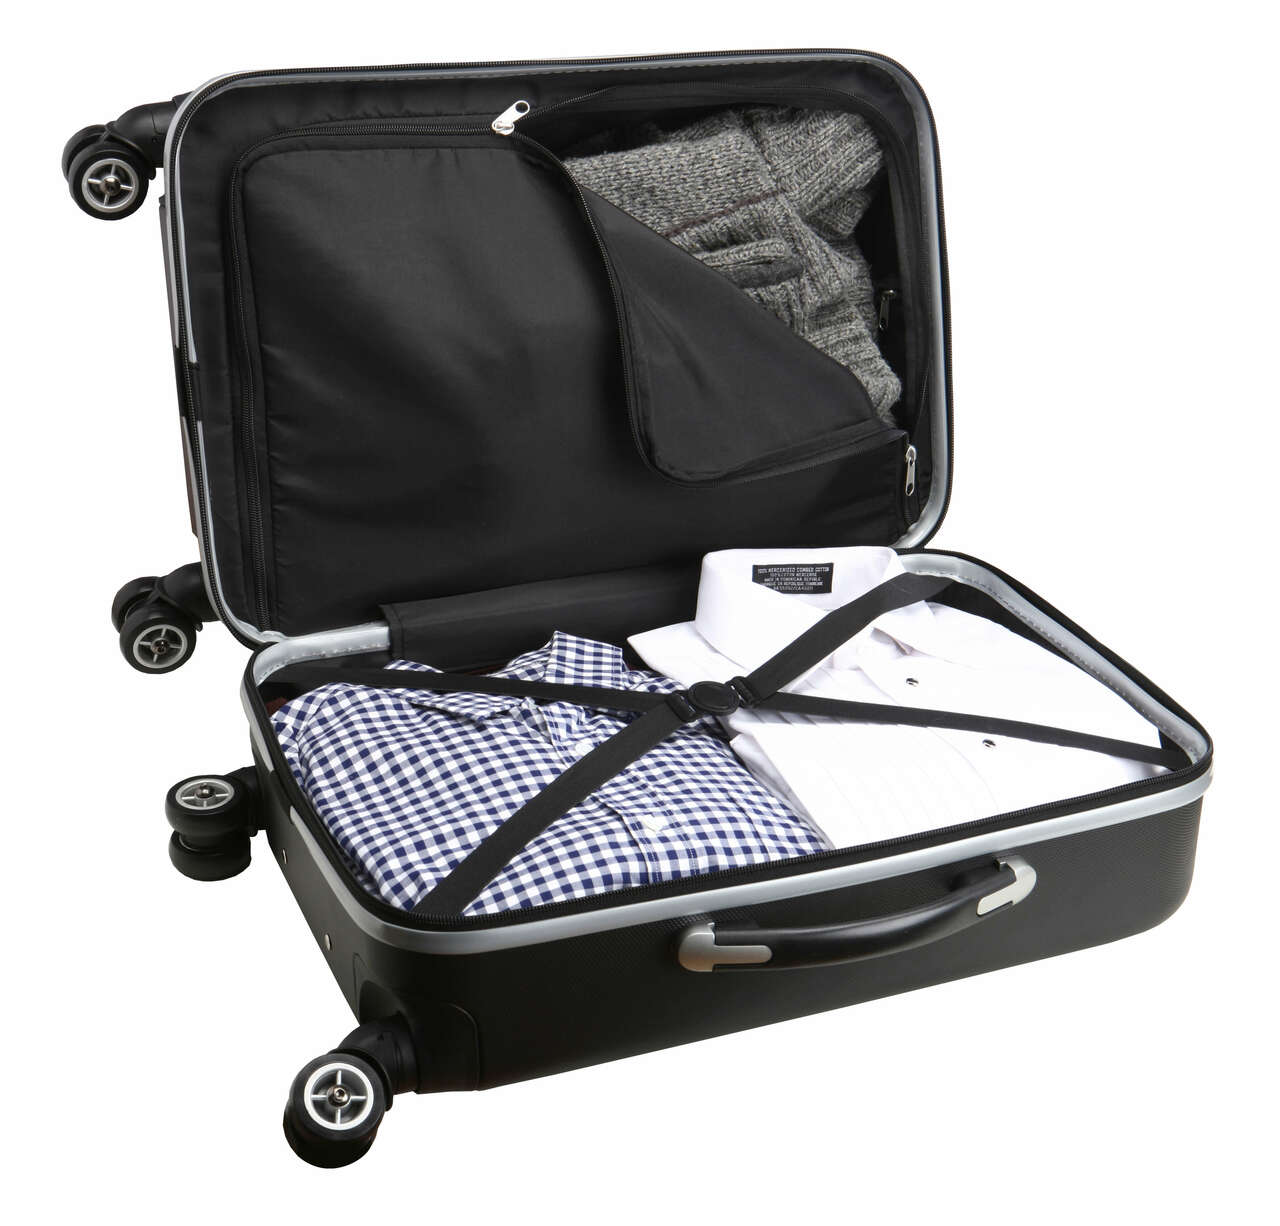 Toronto Blue Jays 20" Hardcase Luggage Carry-on Spinner